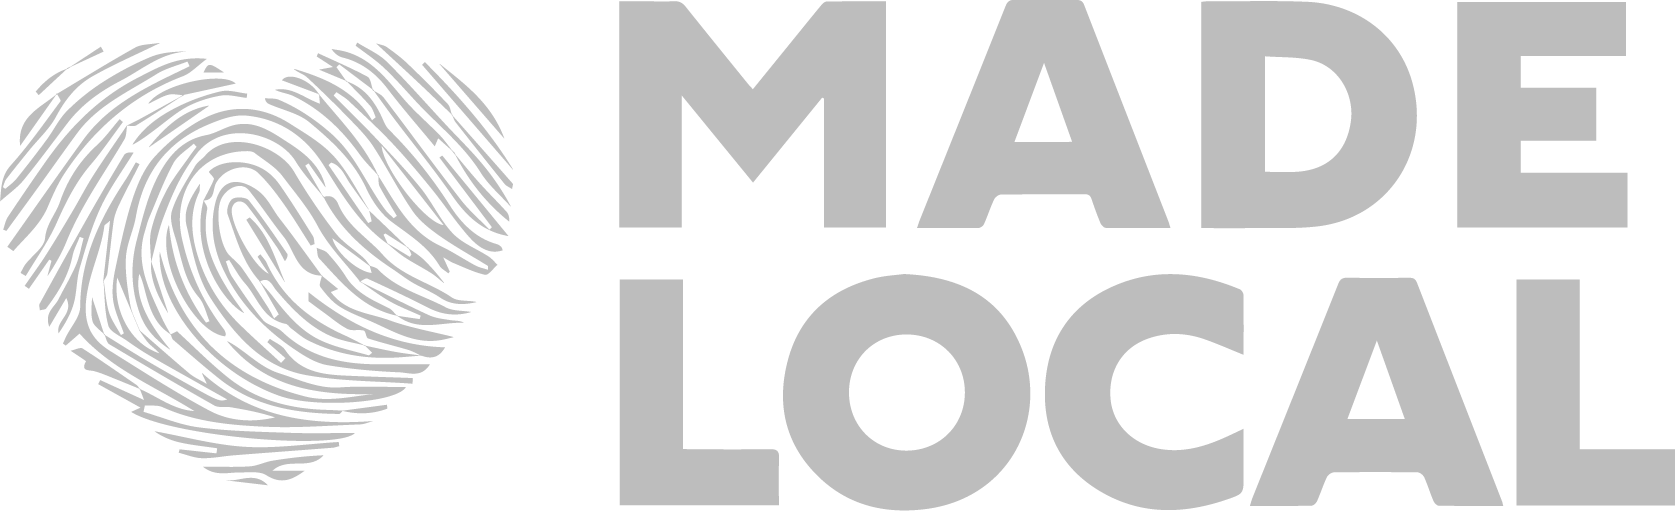 made local logo